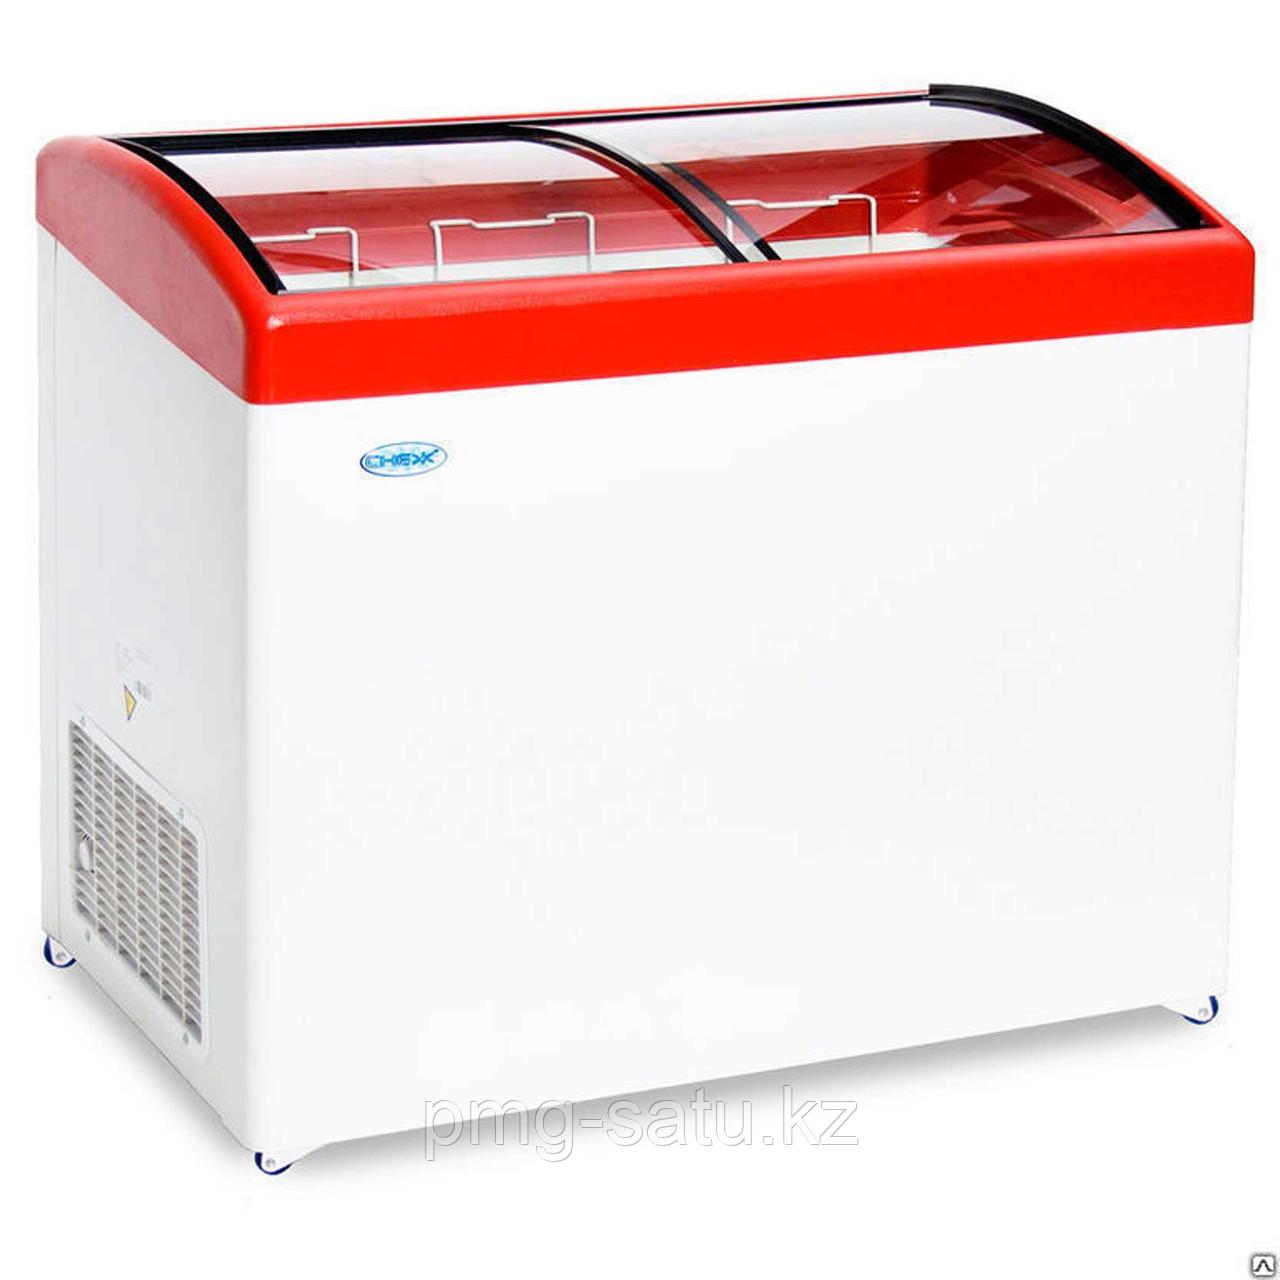 Ларь морозильный Снеж МЛГ-400 красный